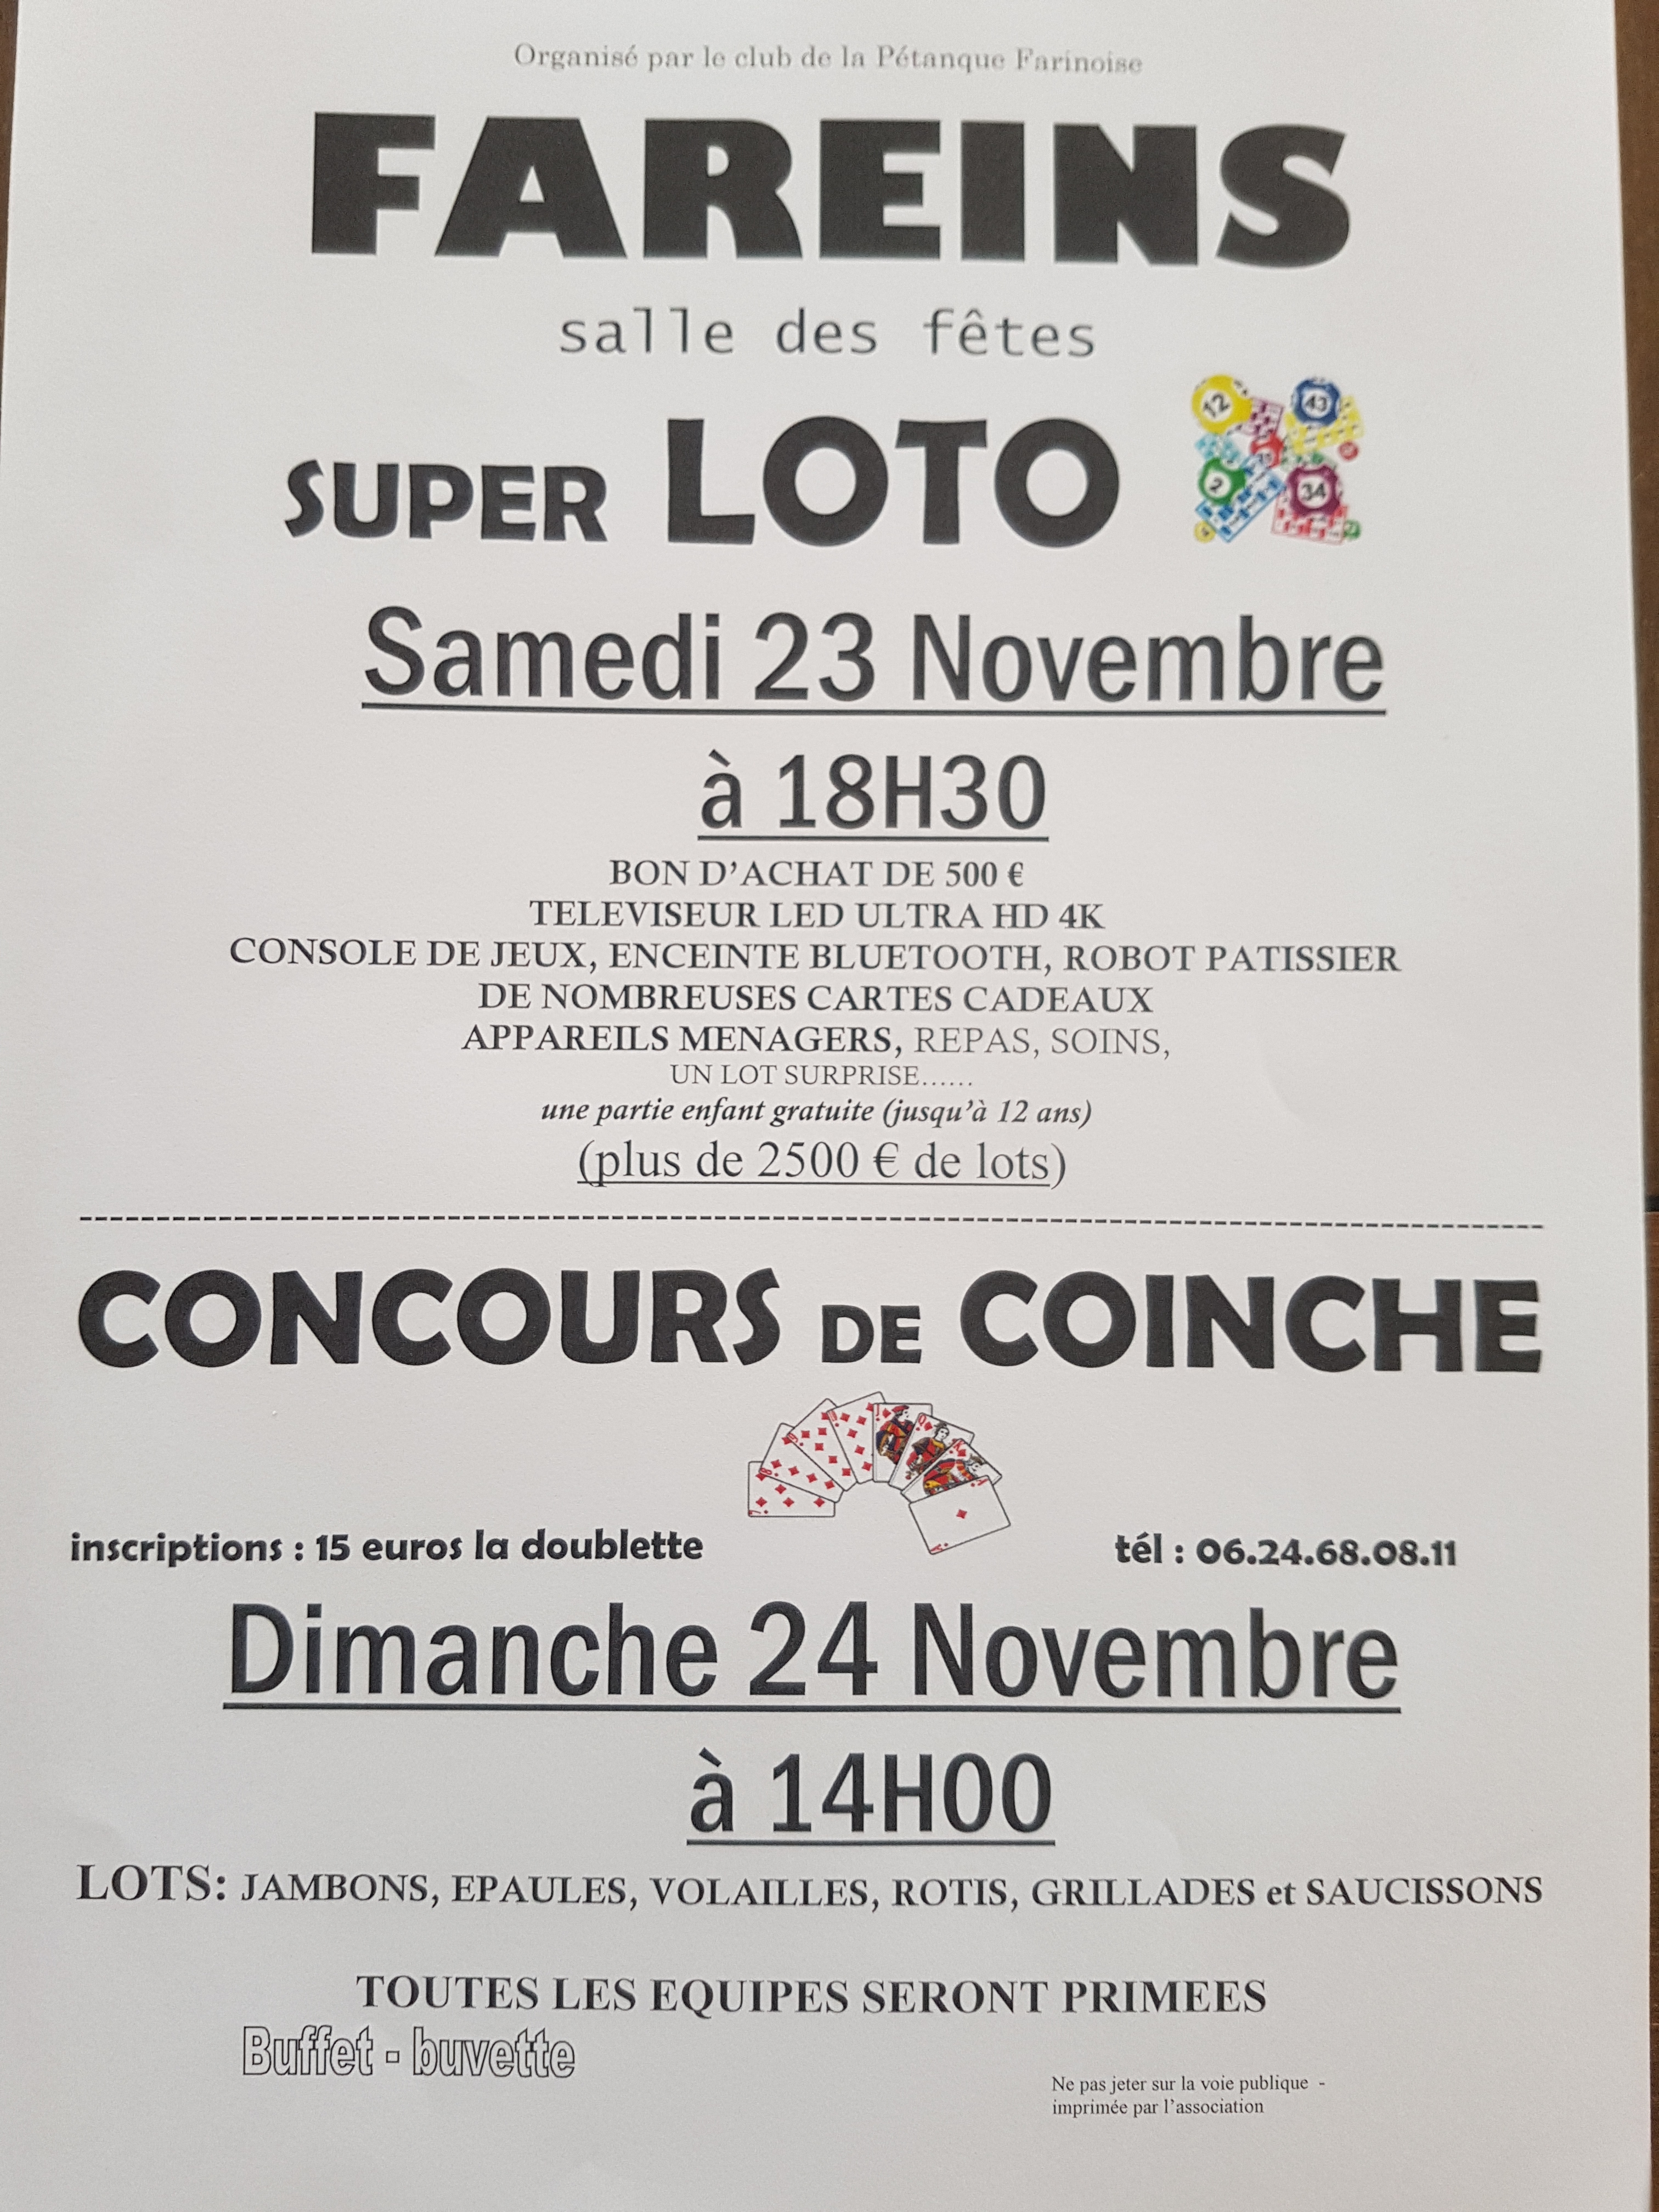 Super loto et concours de coinche 2019.